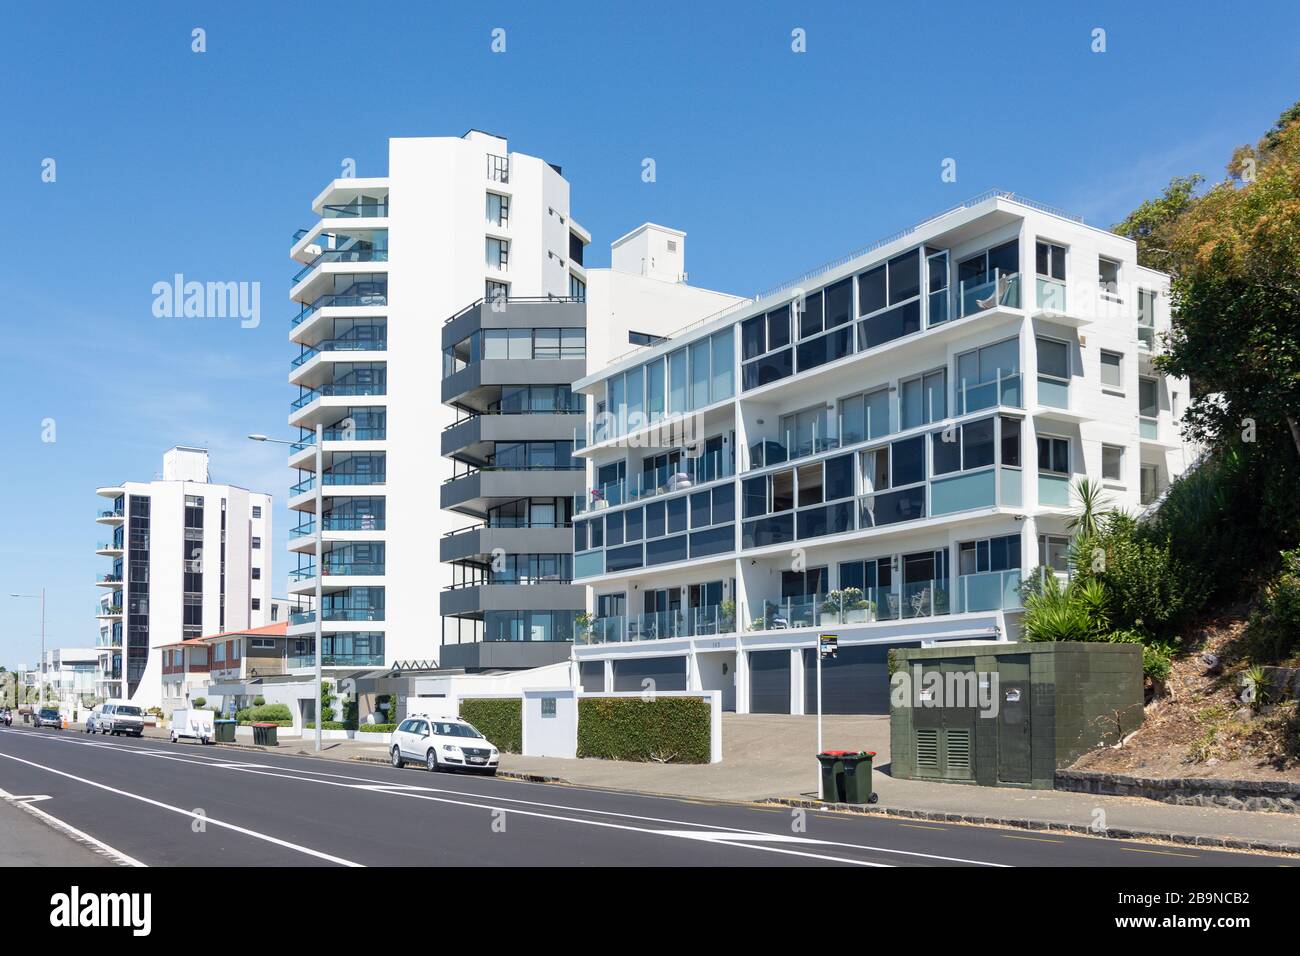 Moderni edifici di appartamenti, Tamaki Drive, Kohimarama, Auckland, Nuova Zelanda Foto Stock